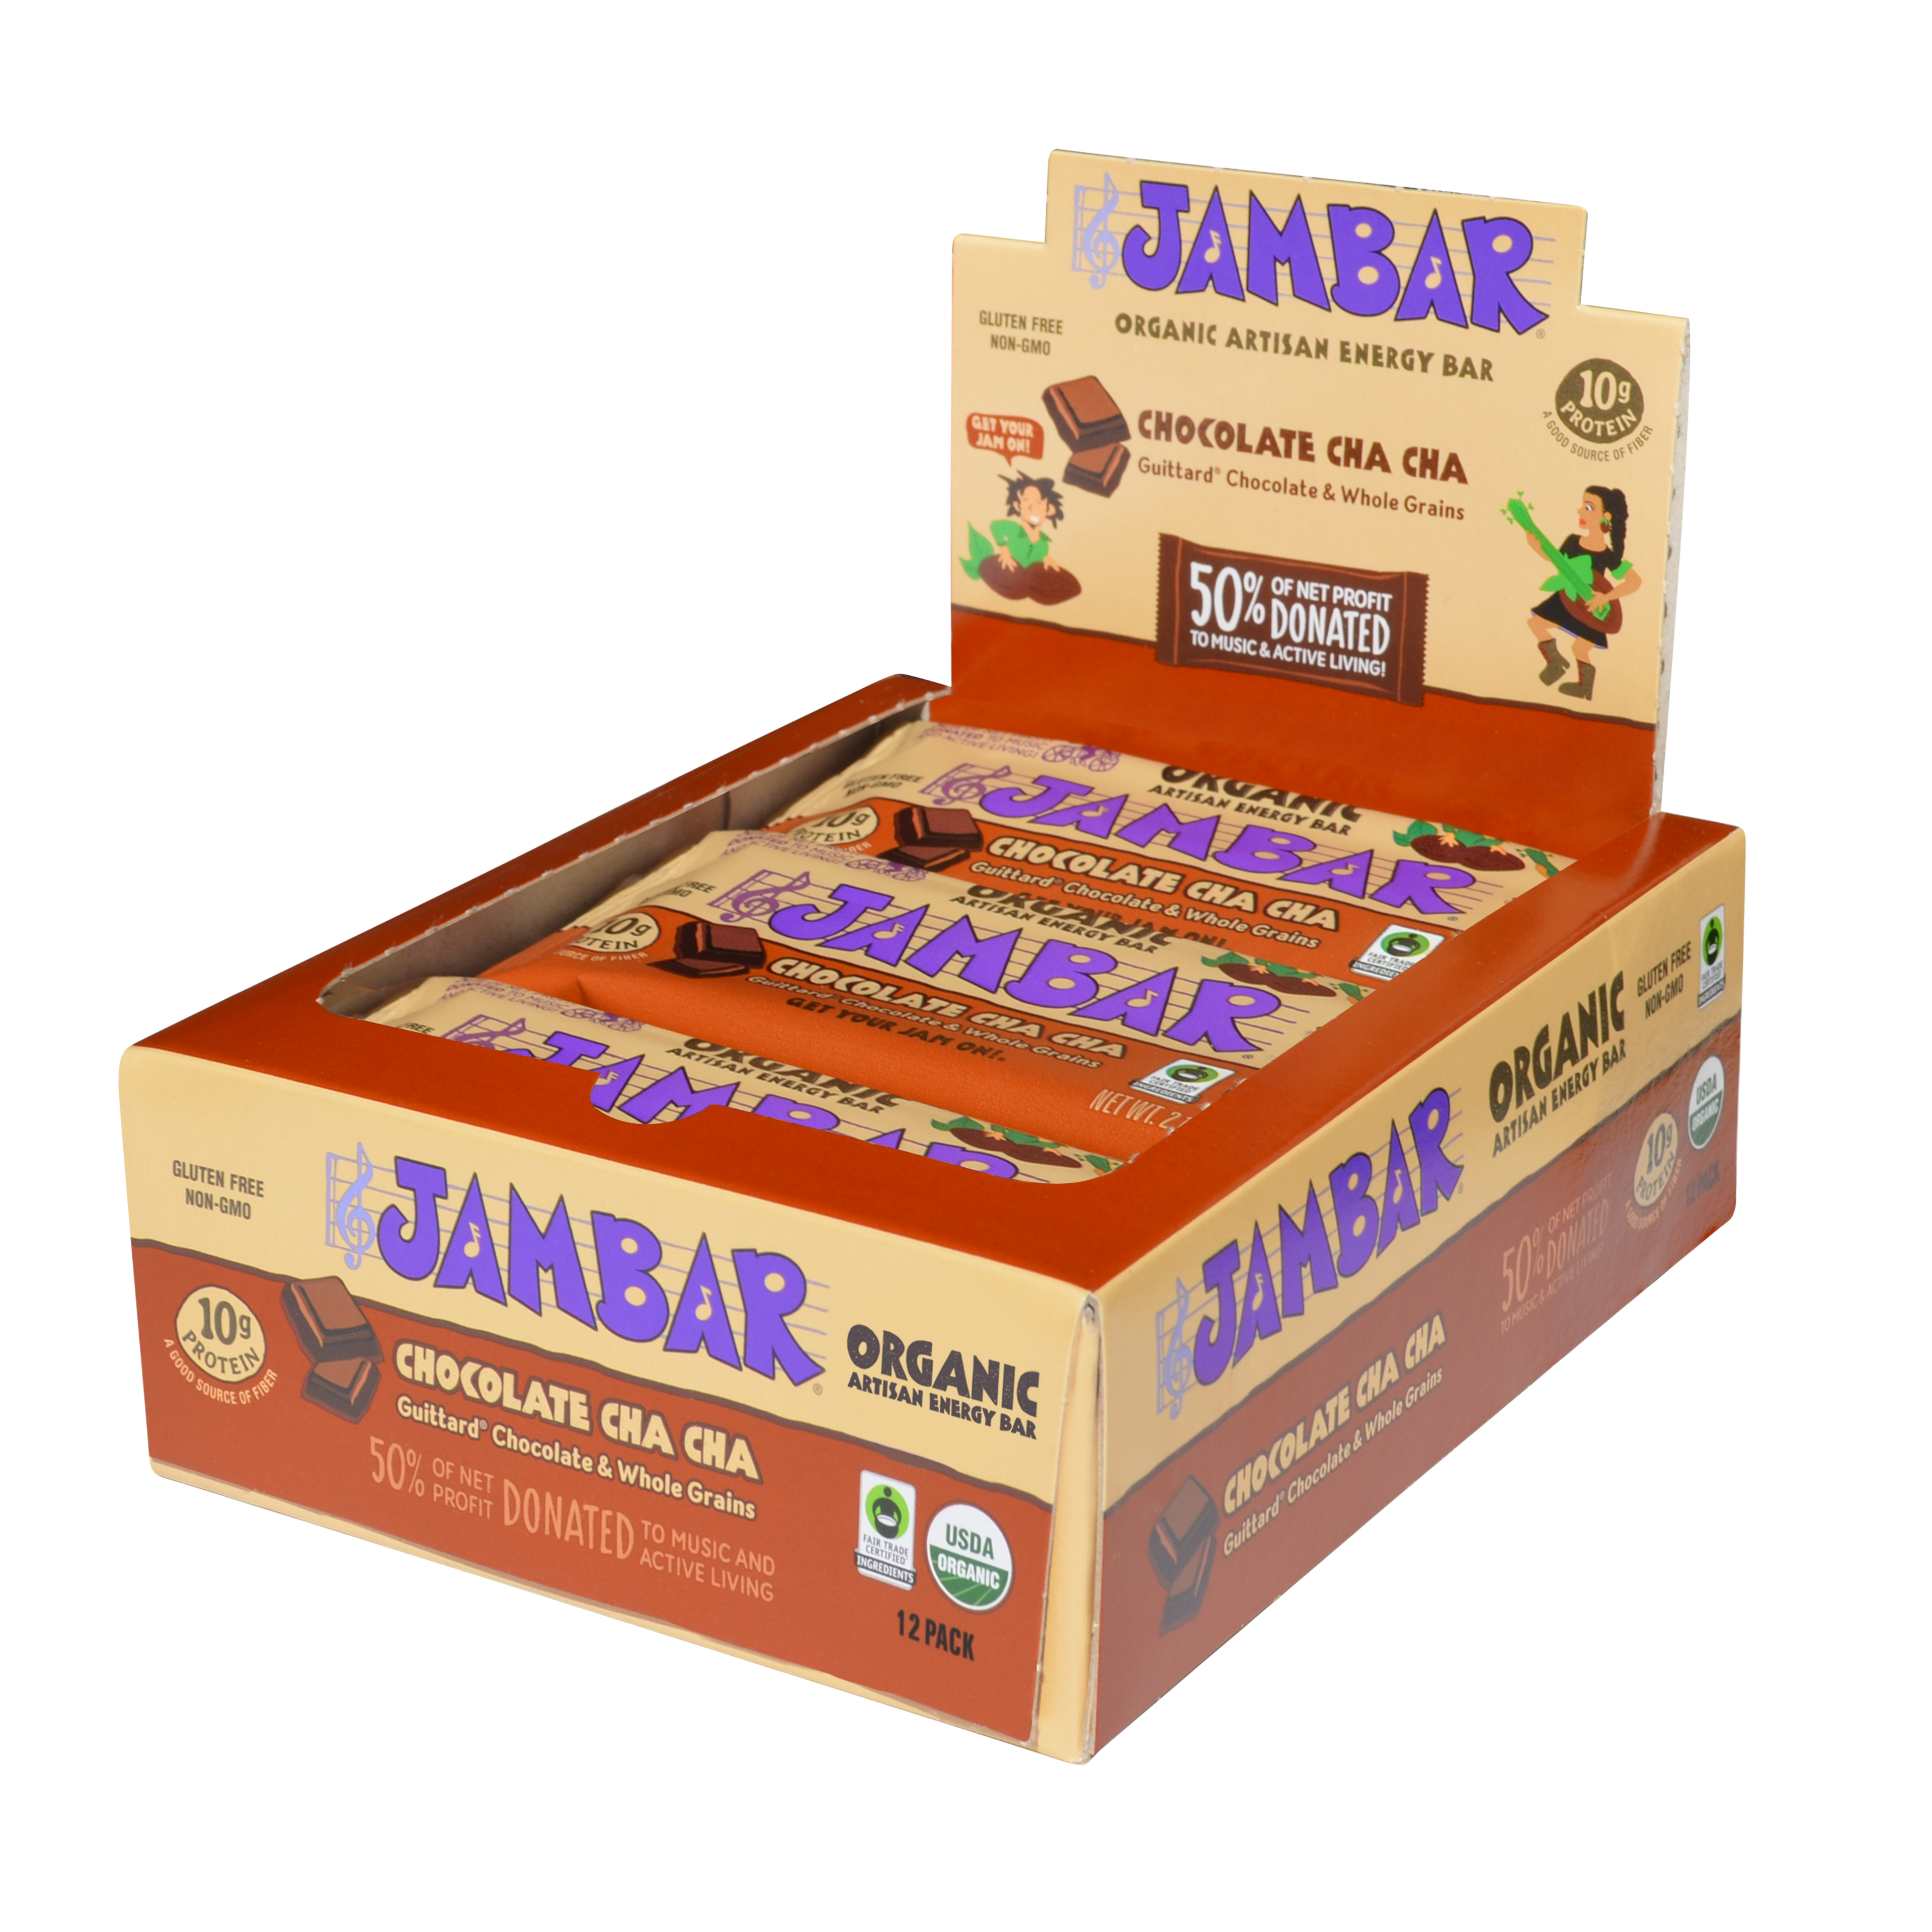 www.jambar.com/products/chocolate-cha-cha